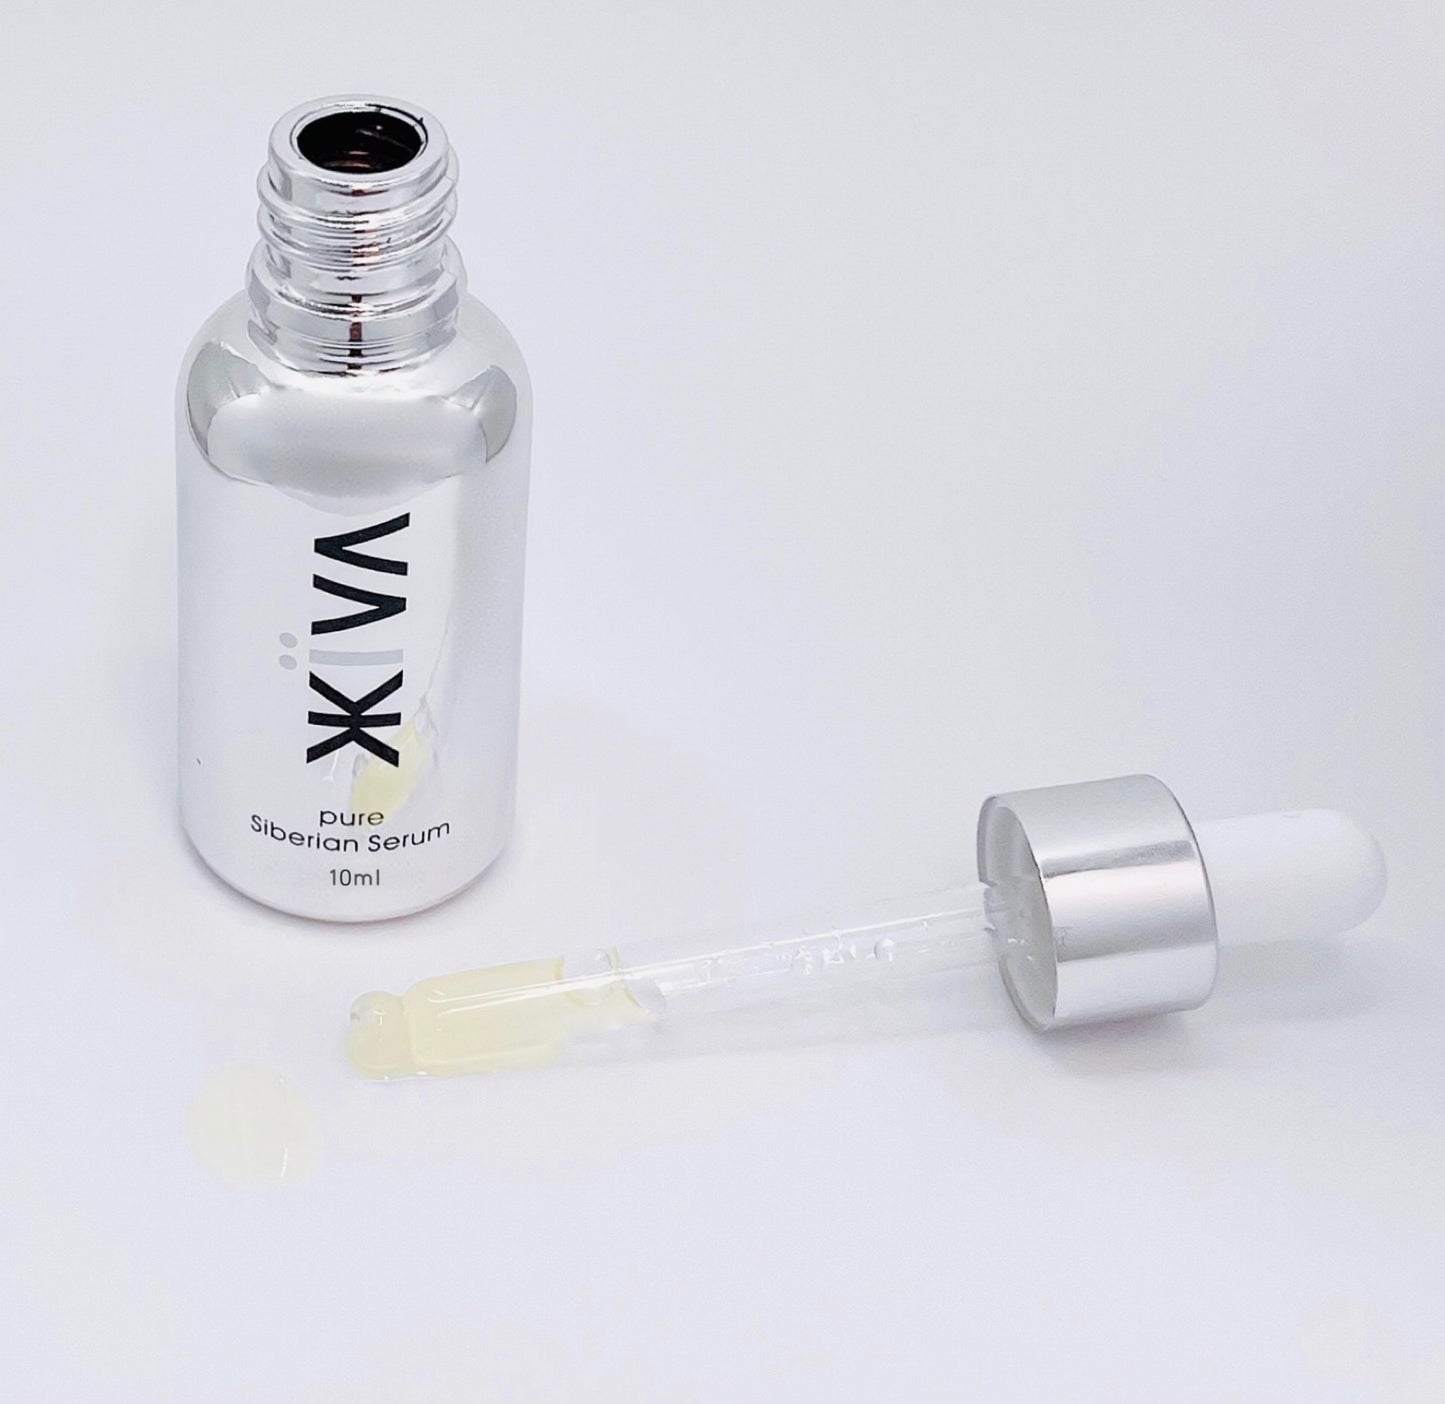 Zhiiva 10ml - Natural, Organic, Pure, Chemistry-free, skincare serum